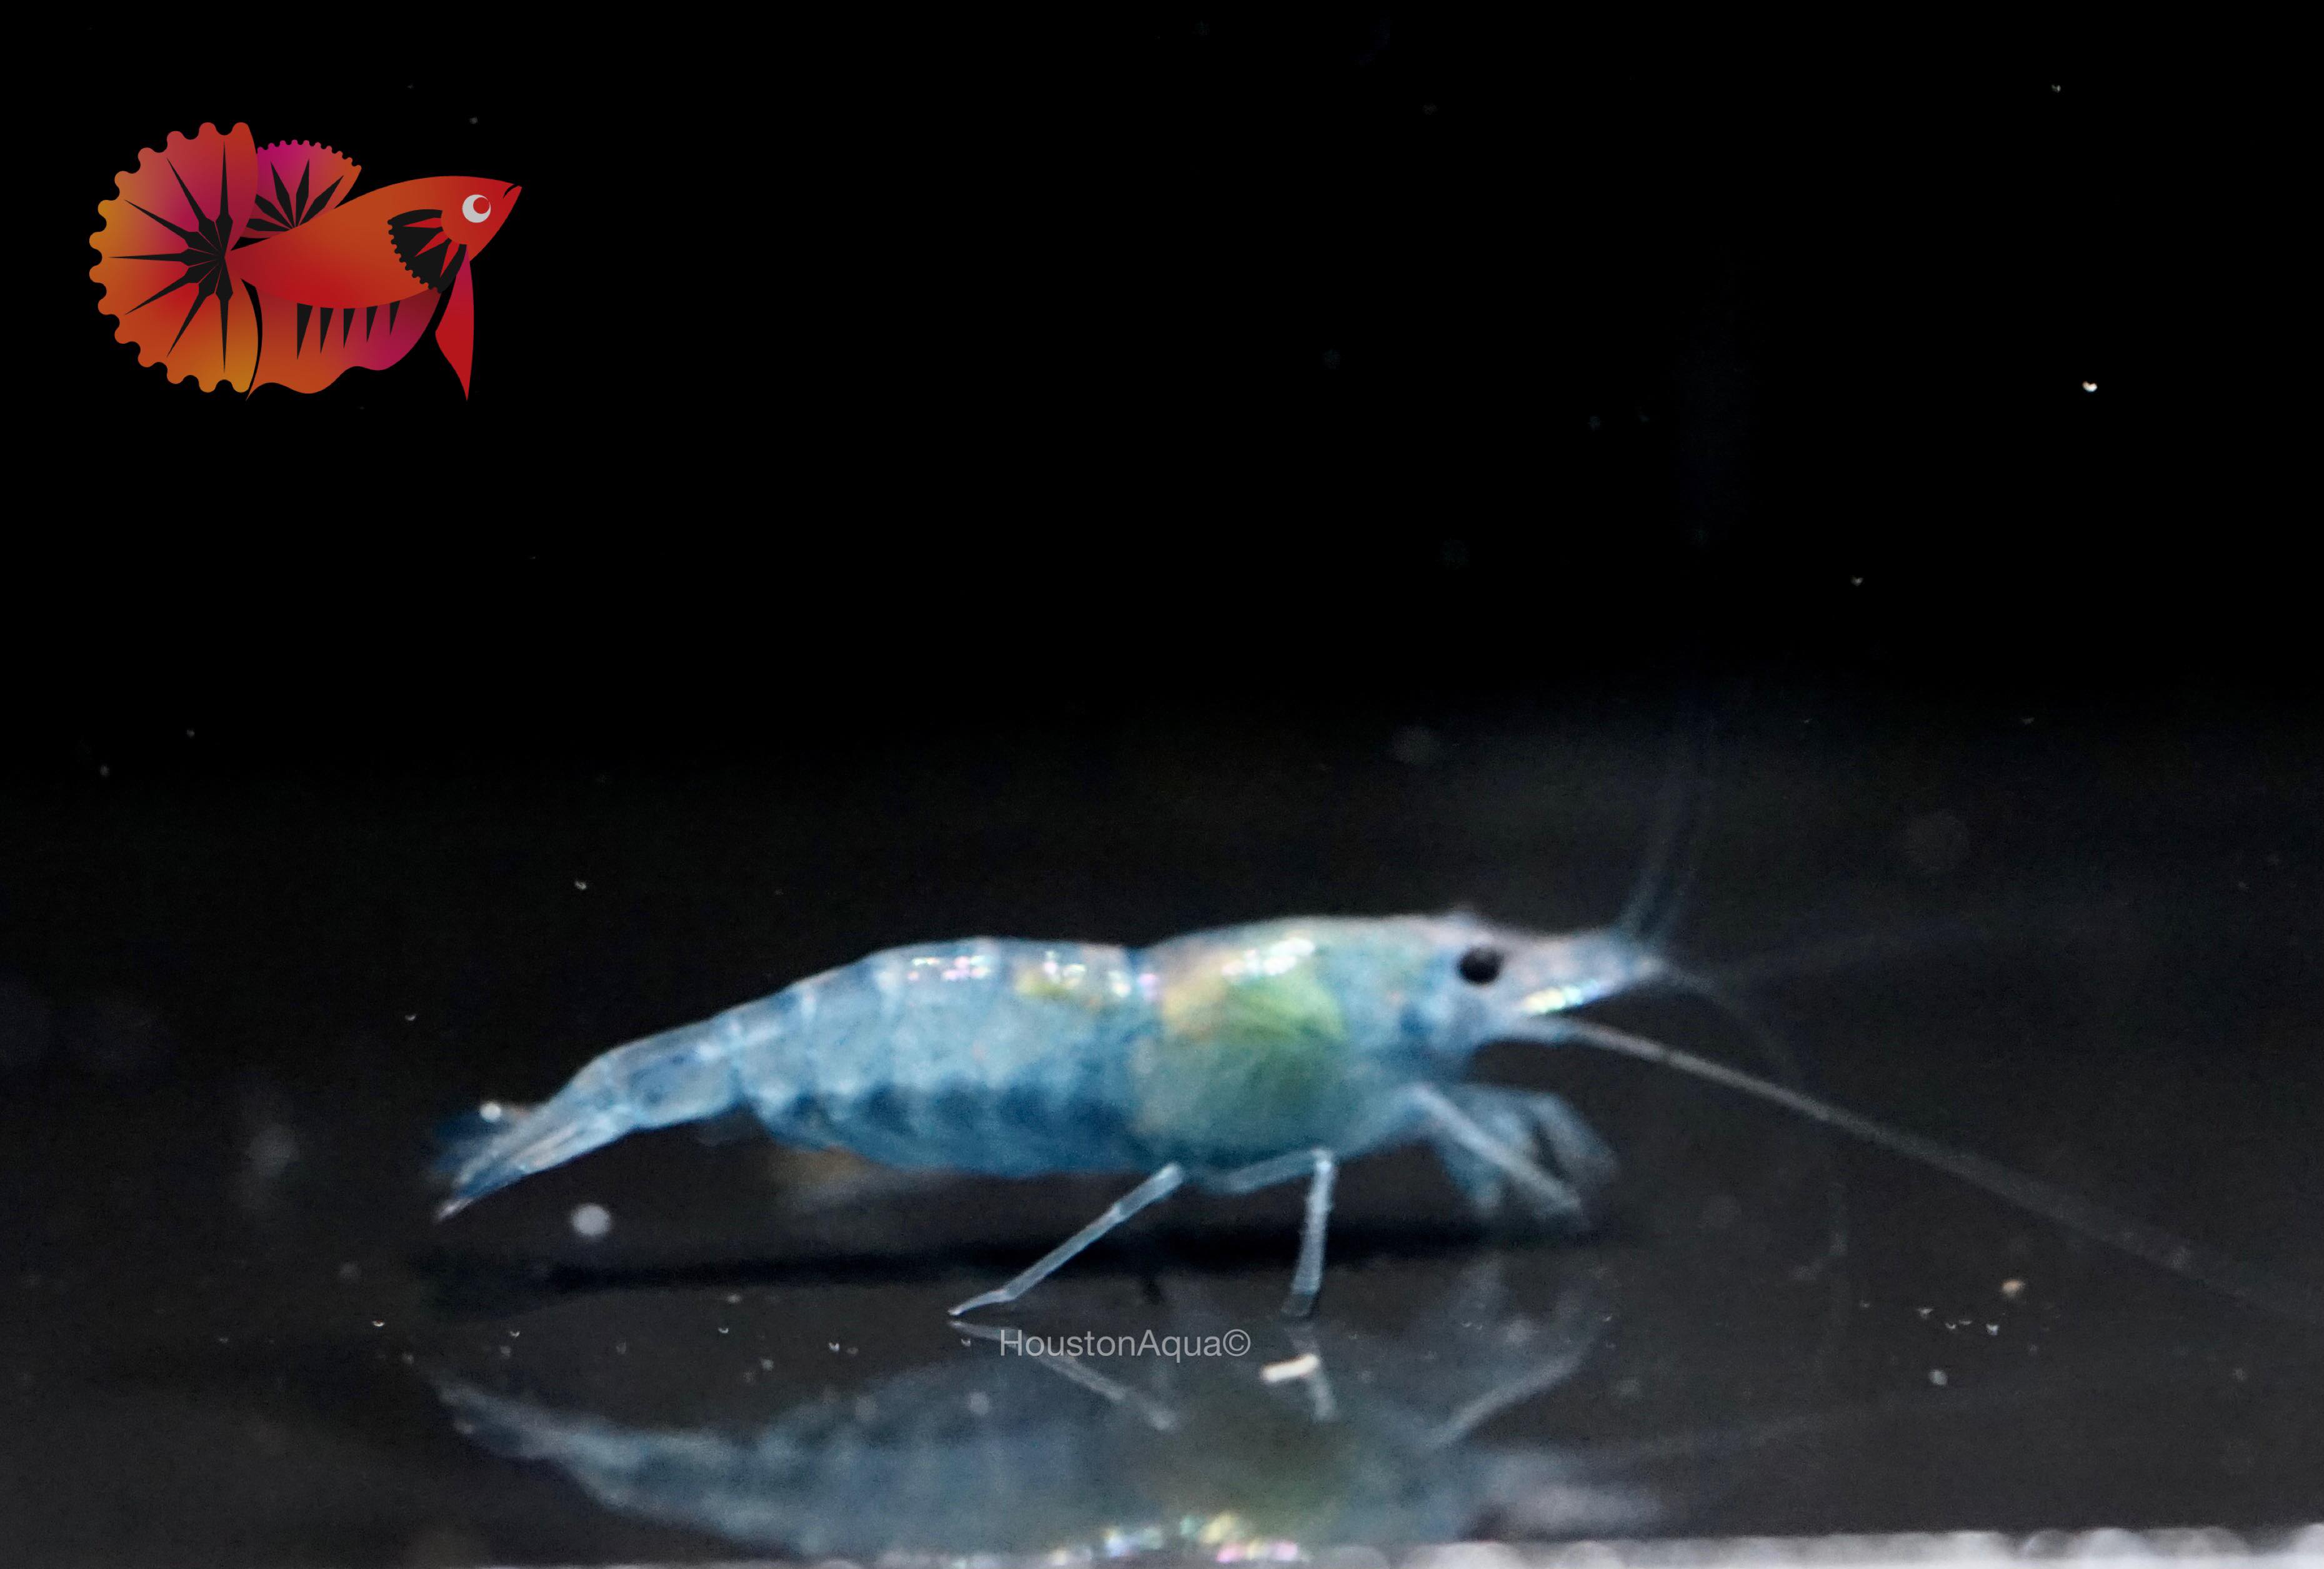 Blue Jelly Neocaridina Shrimp - Grade SSS++